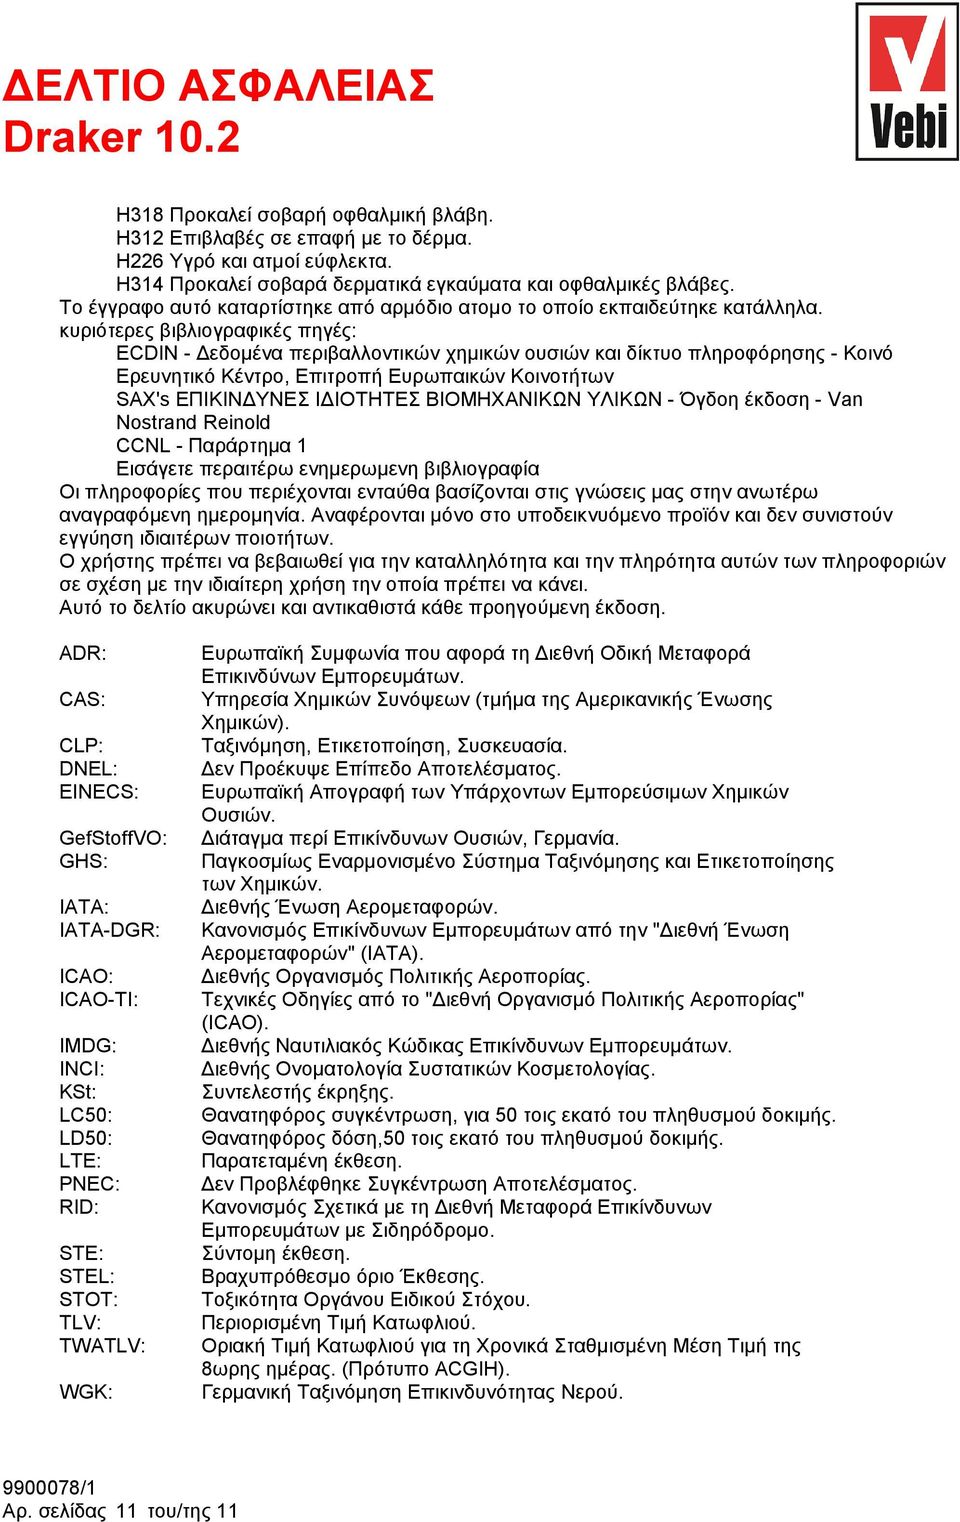 κυριότερες βιβλιογραφικές πηγές: ECDIN - Δεδομένα περιβαλλοντικών χημικών ουσιών και δίκτυο πληροφόρησης - Κοινό Ερευνητικό Κέντρο, Επιτροπή Ευρωπαικών Κοινοτήτων SAX's ΕΠΙΚΙΝΔΥΝΕΣ ΙΔΙΟΤΗΤΕΣ